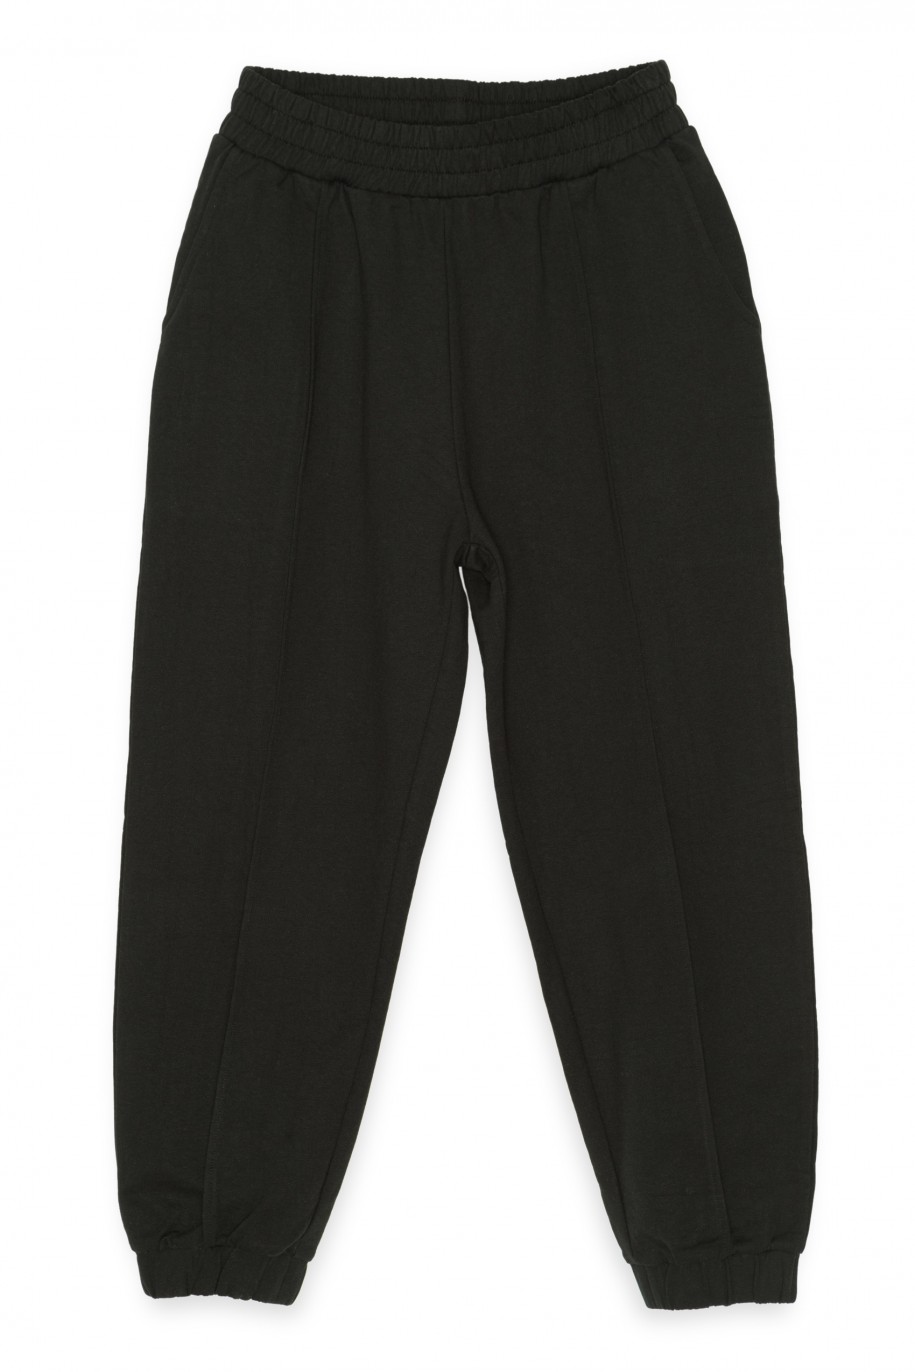 Czarne spodnie dresowe z przeszyciami - 40199